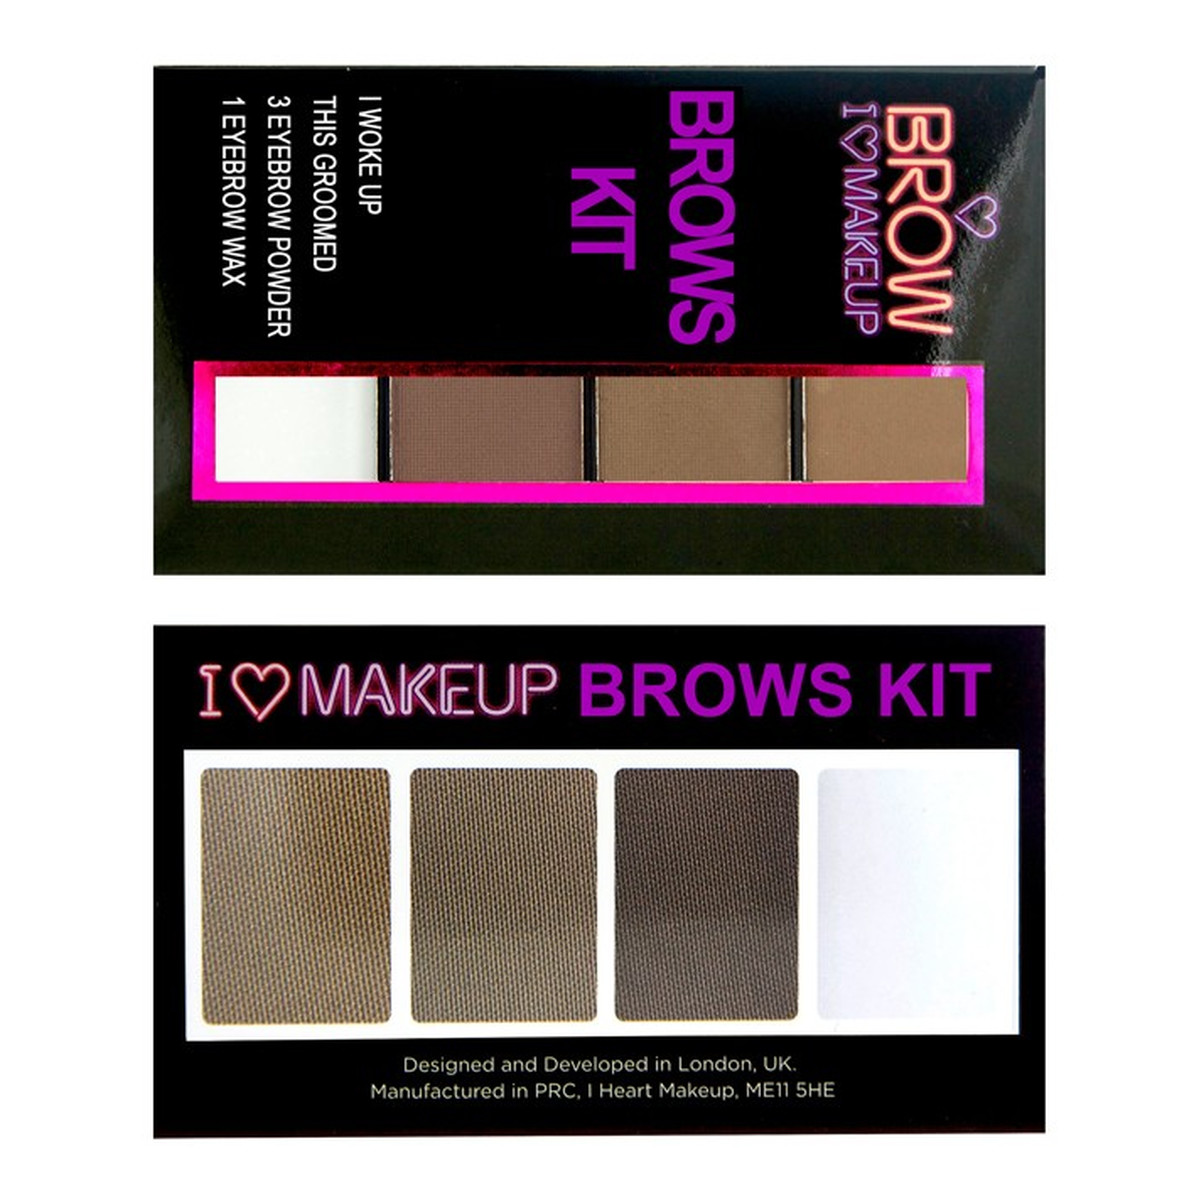 Makeup Revolution Brow Kit I Love Makeup Zestaw Do Stylizacji Brwi 3g